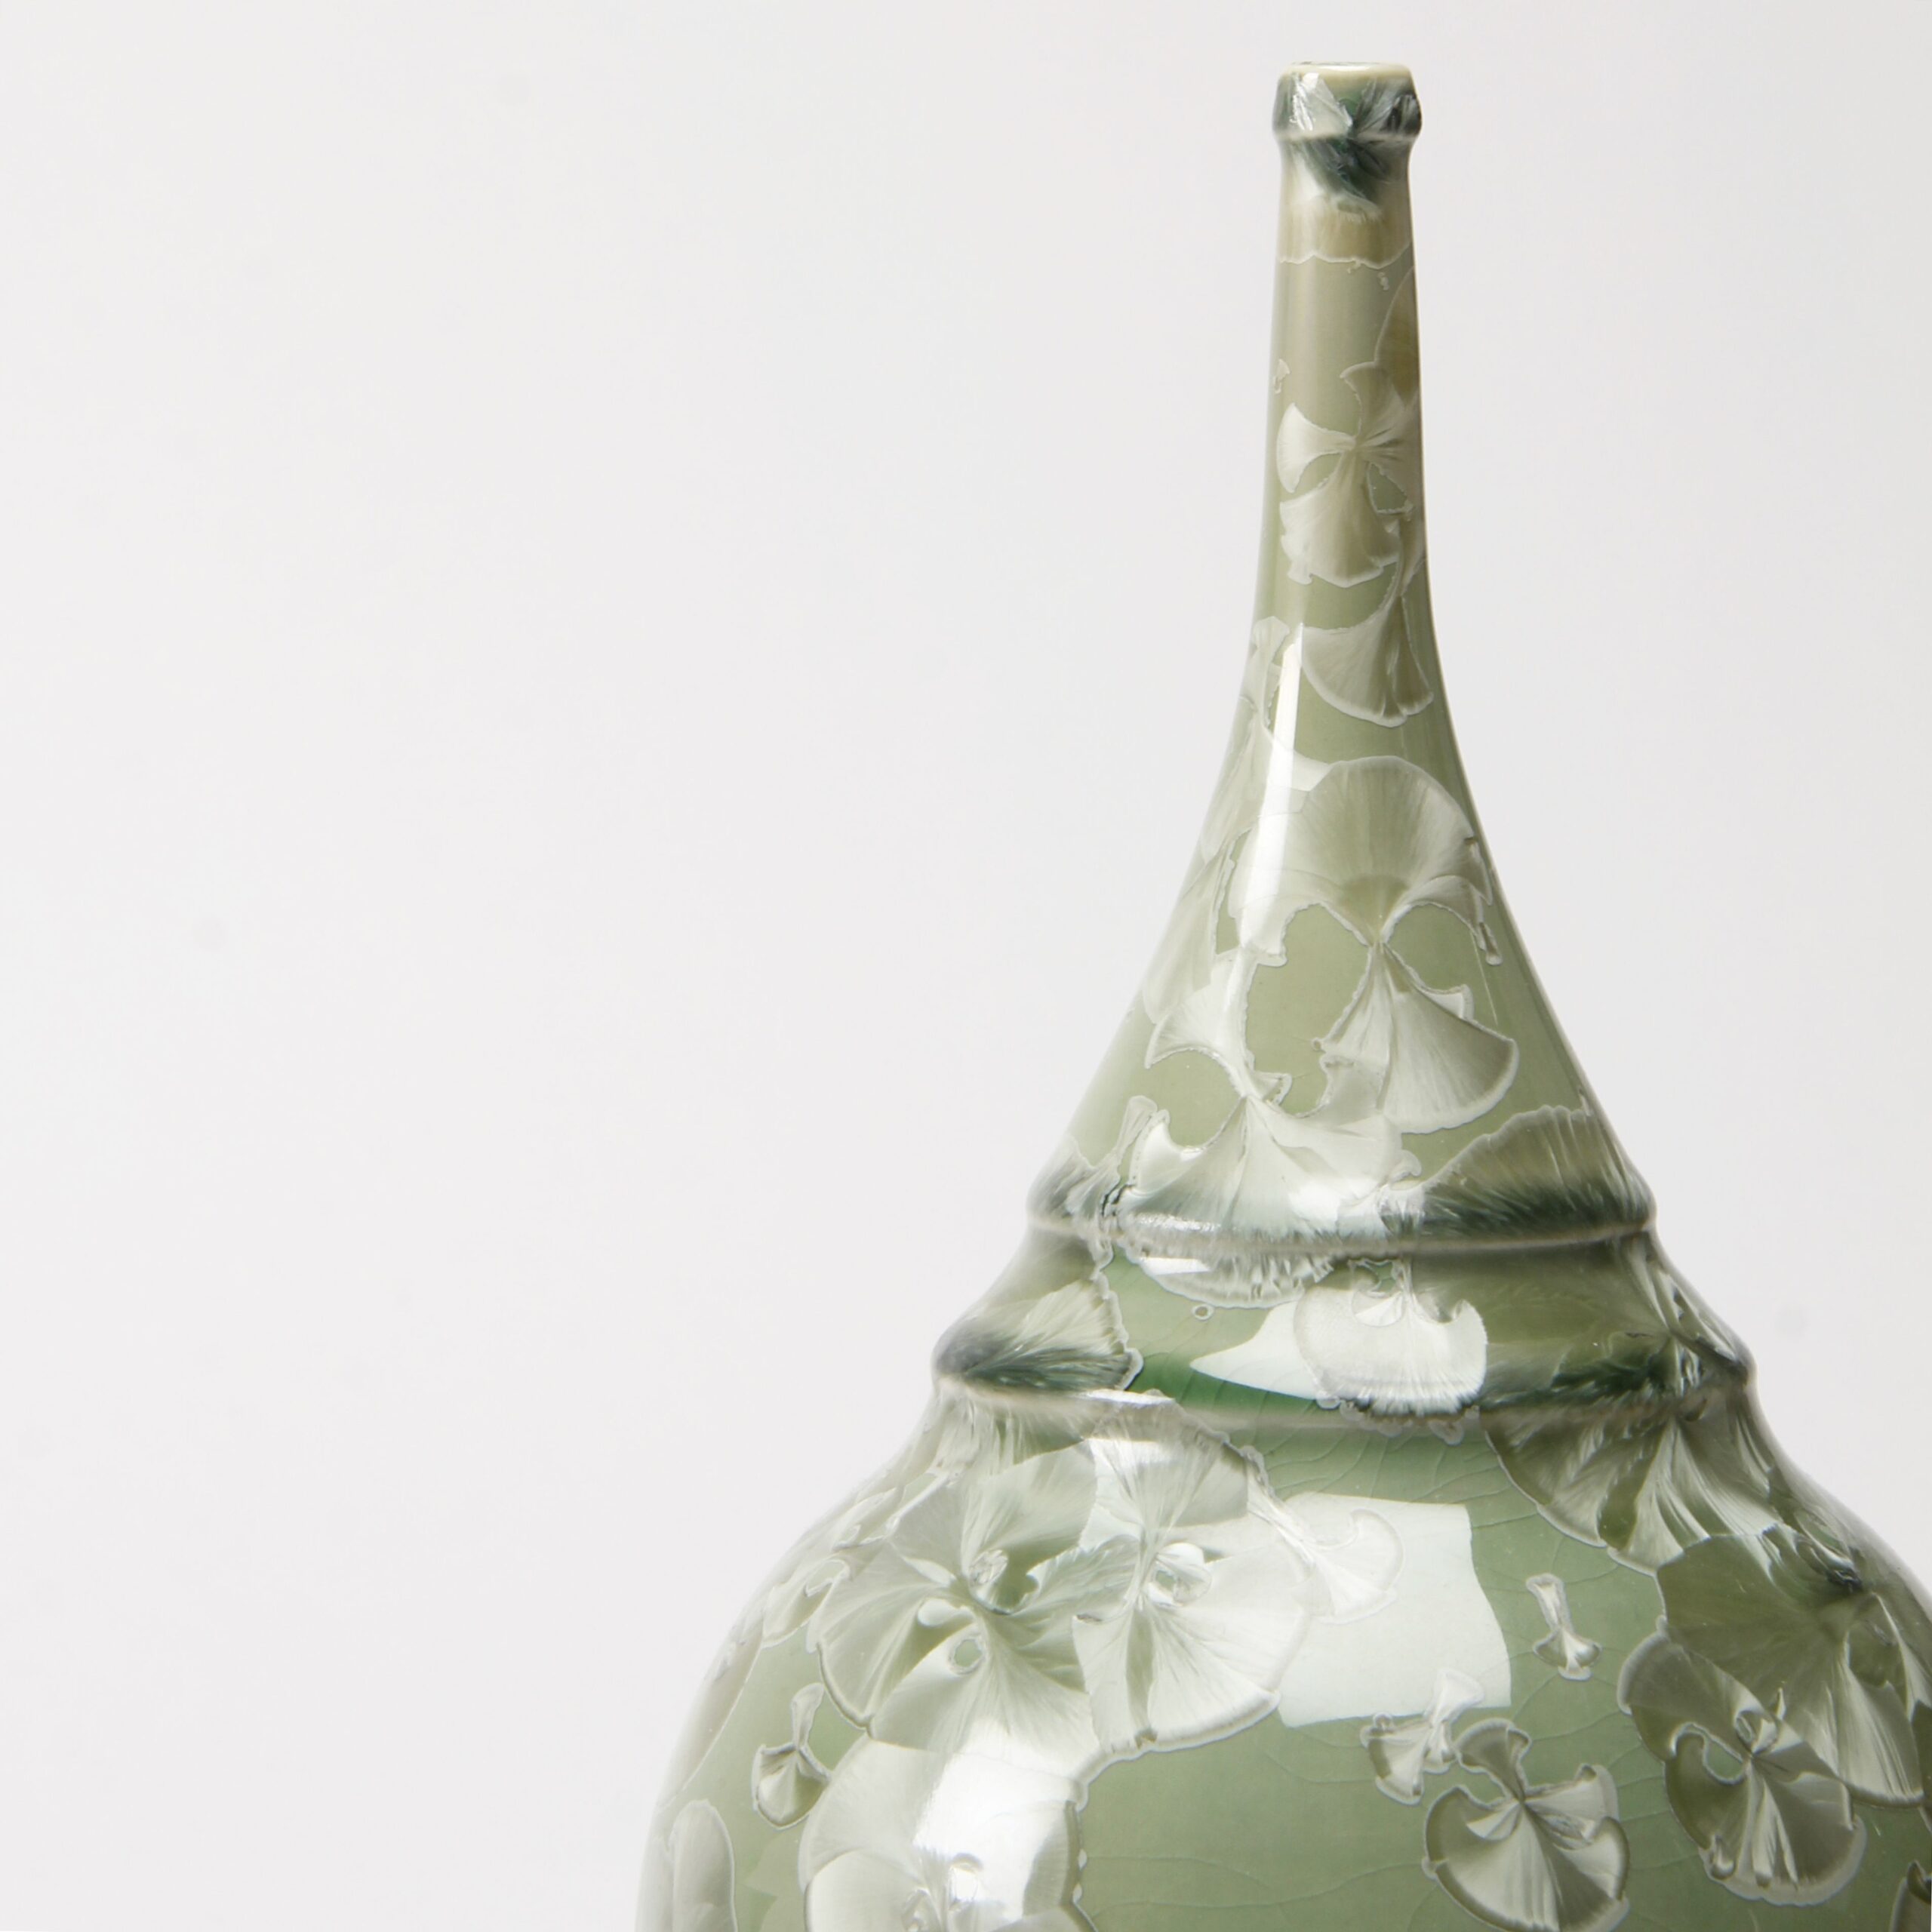 Yumiko Katsuya: Gold on Green Long Neck Vase Product Image 4 of 4